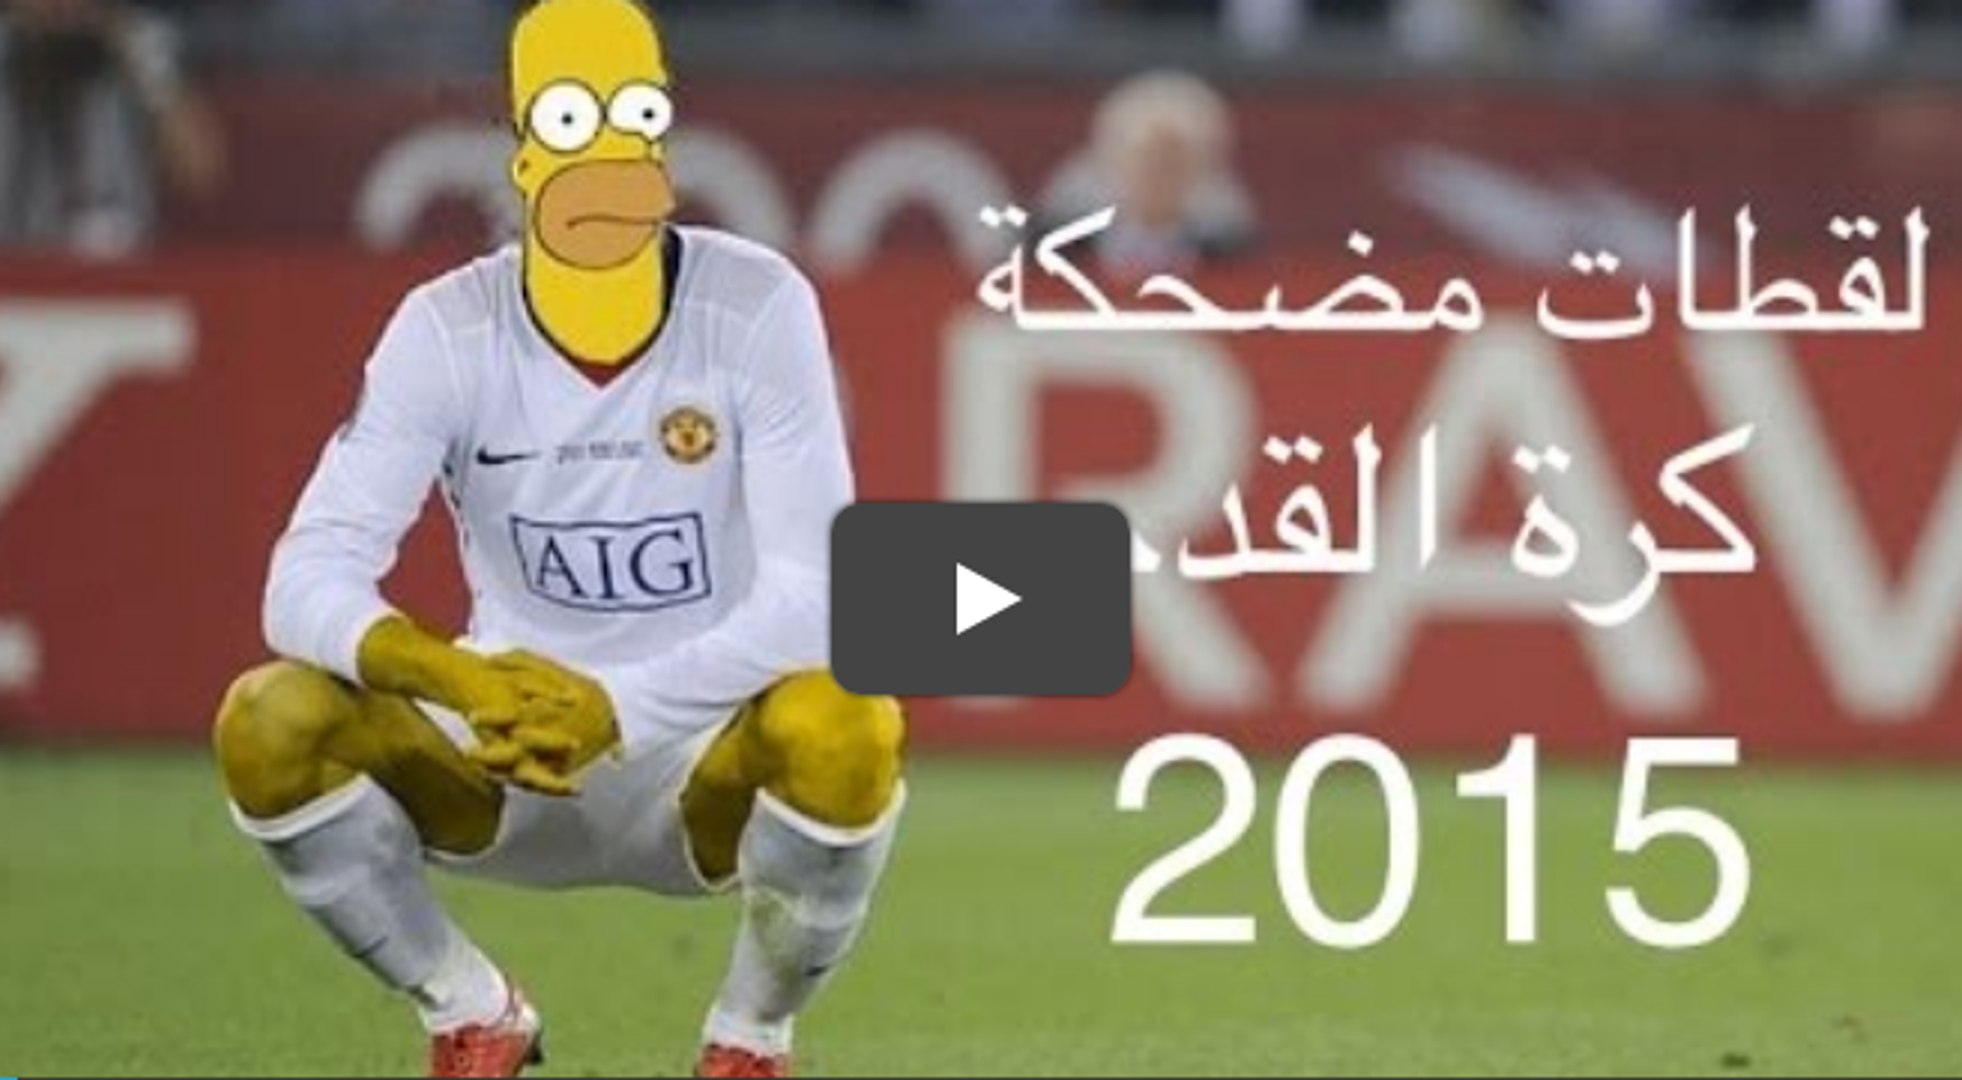 لقطات مضحكة جدا في عالم كرة القدم 2015 - الجزء الثاني - - فيديو Dailymotion